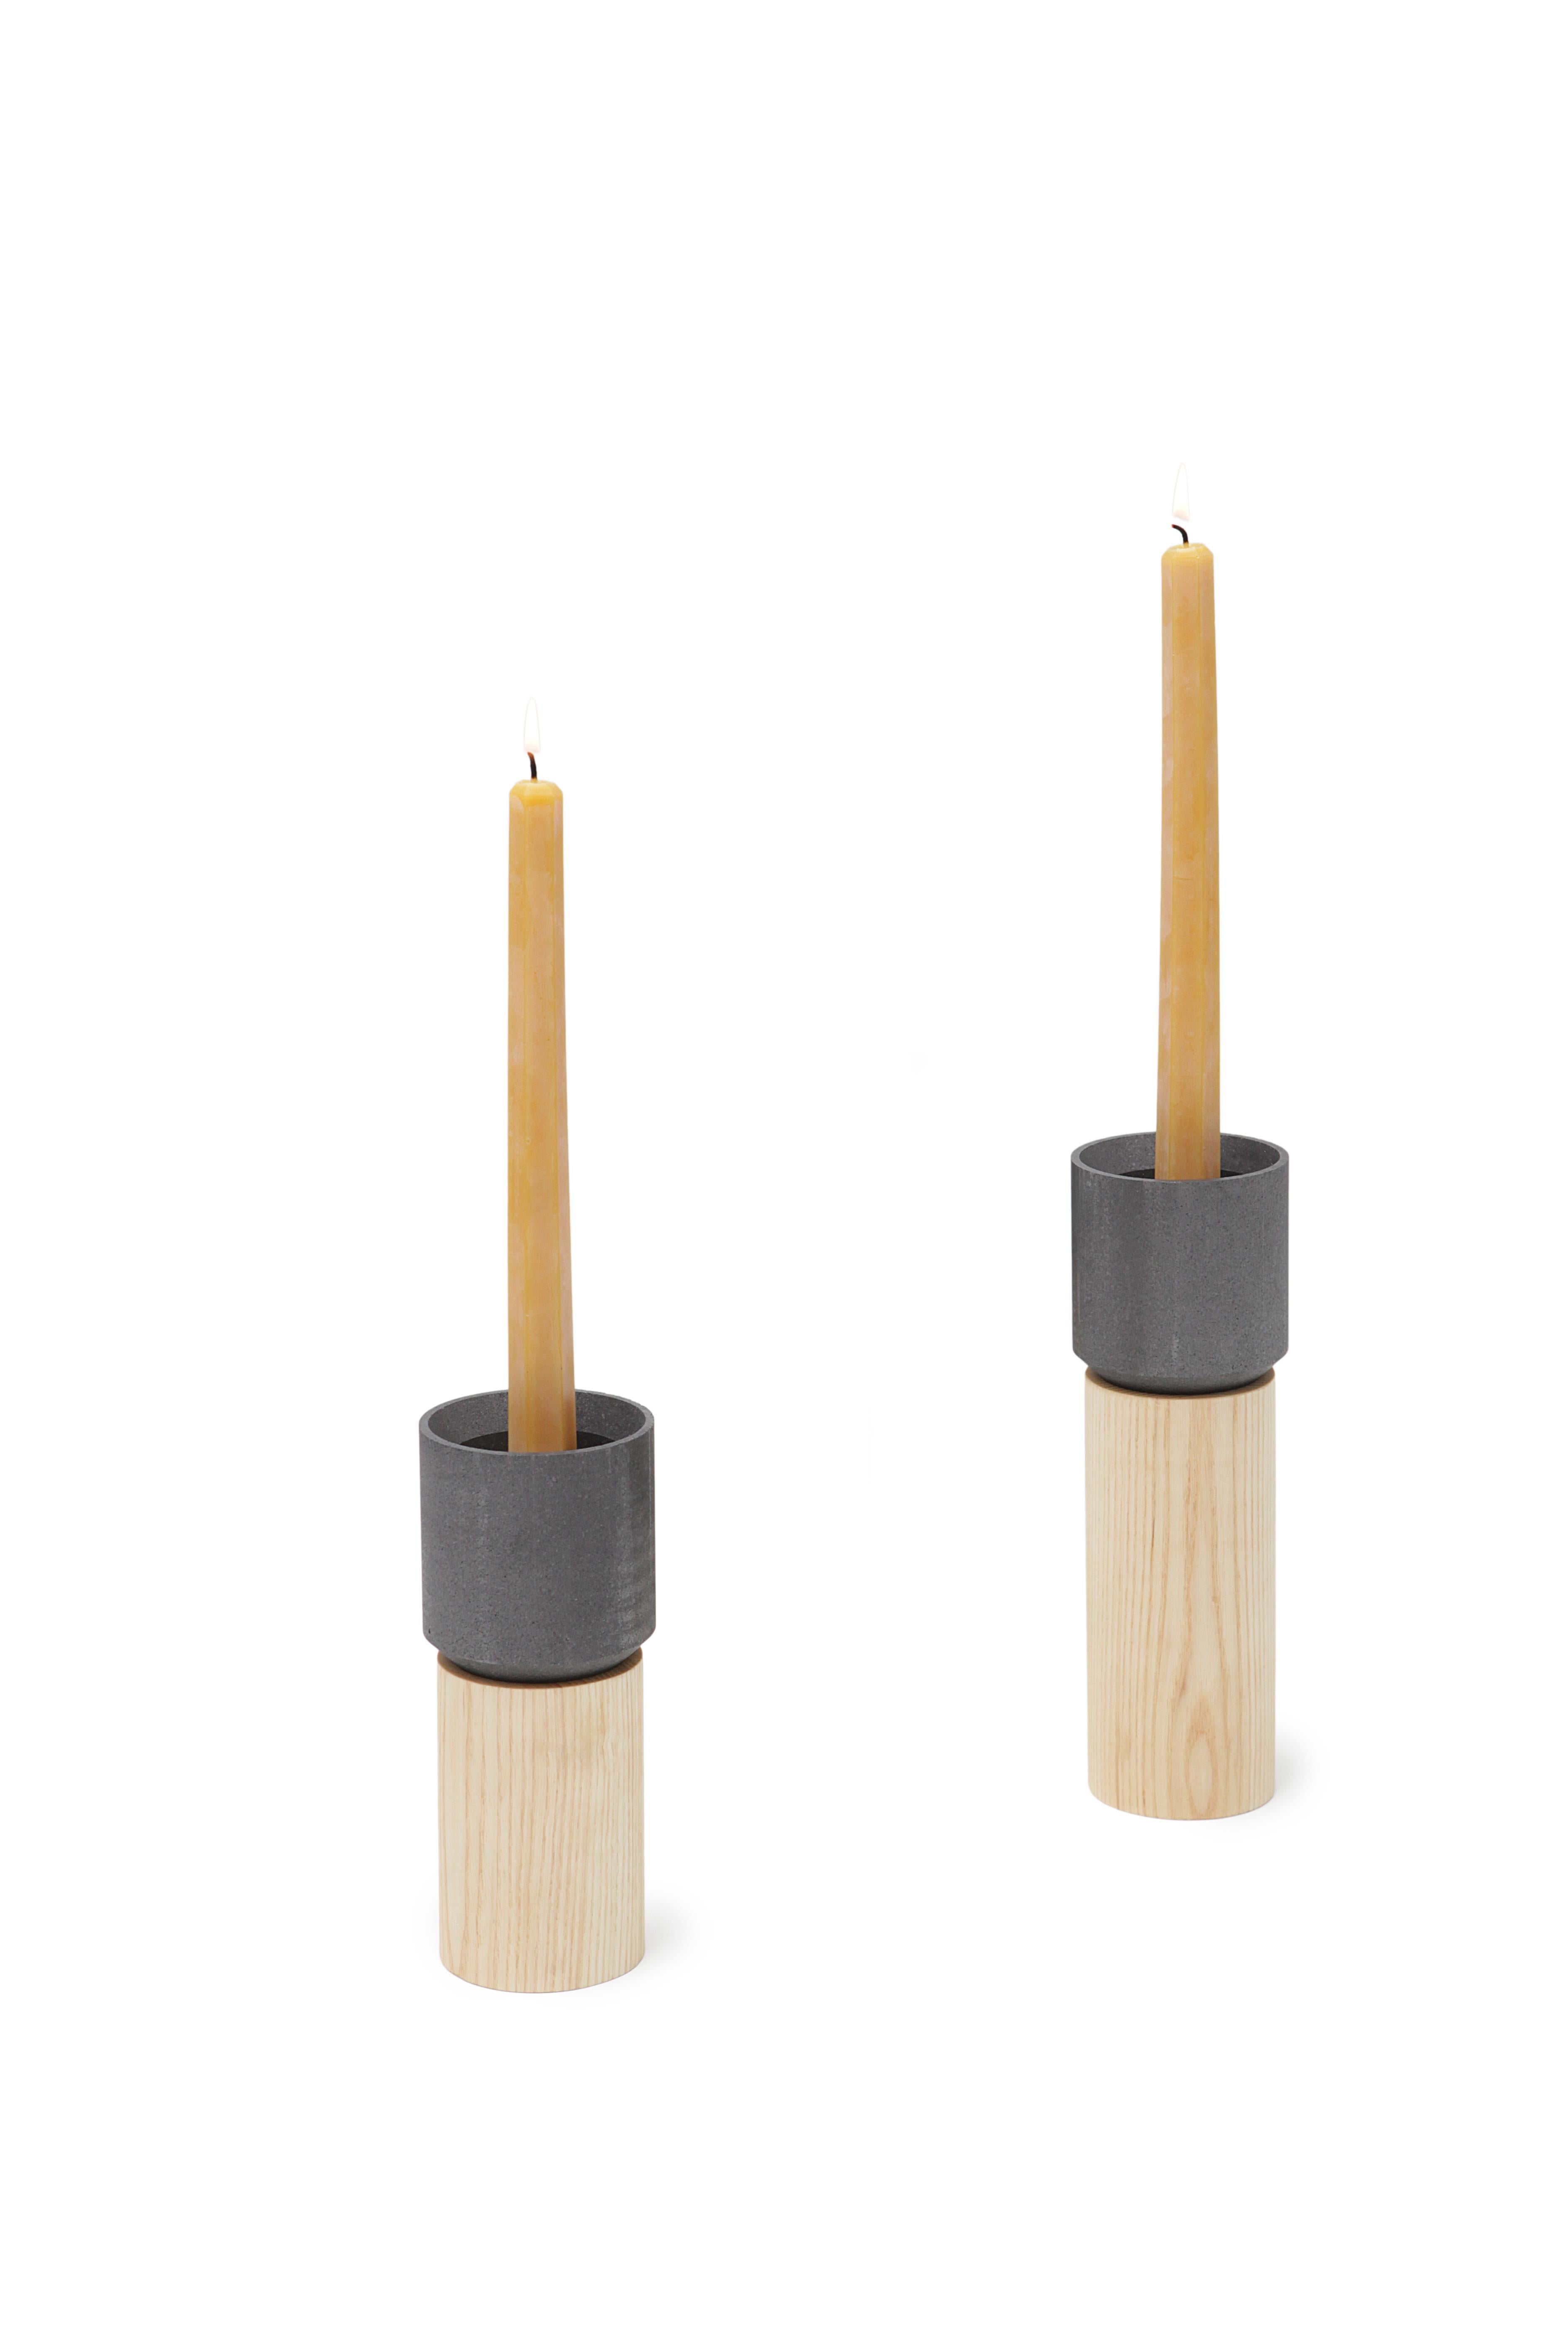 Stick Candleholder Small Modern Contemporary Graphite Pedestal Candlestick (amerikanisch)